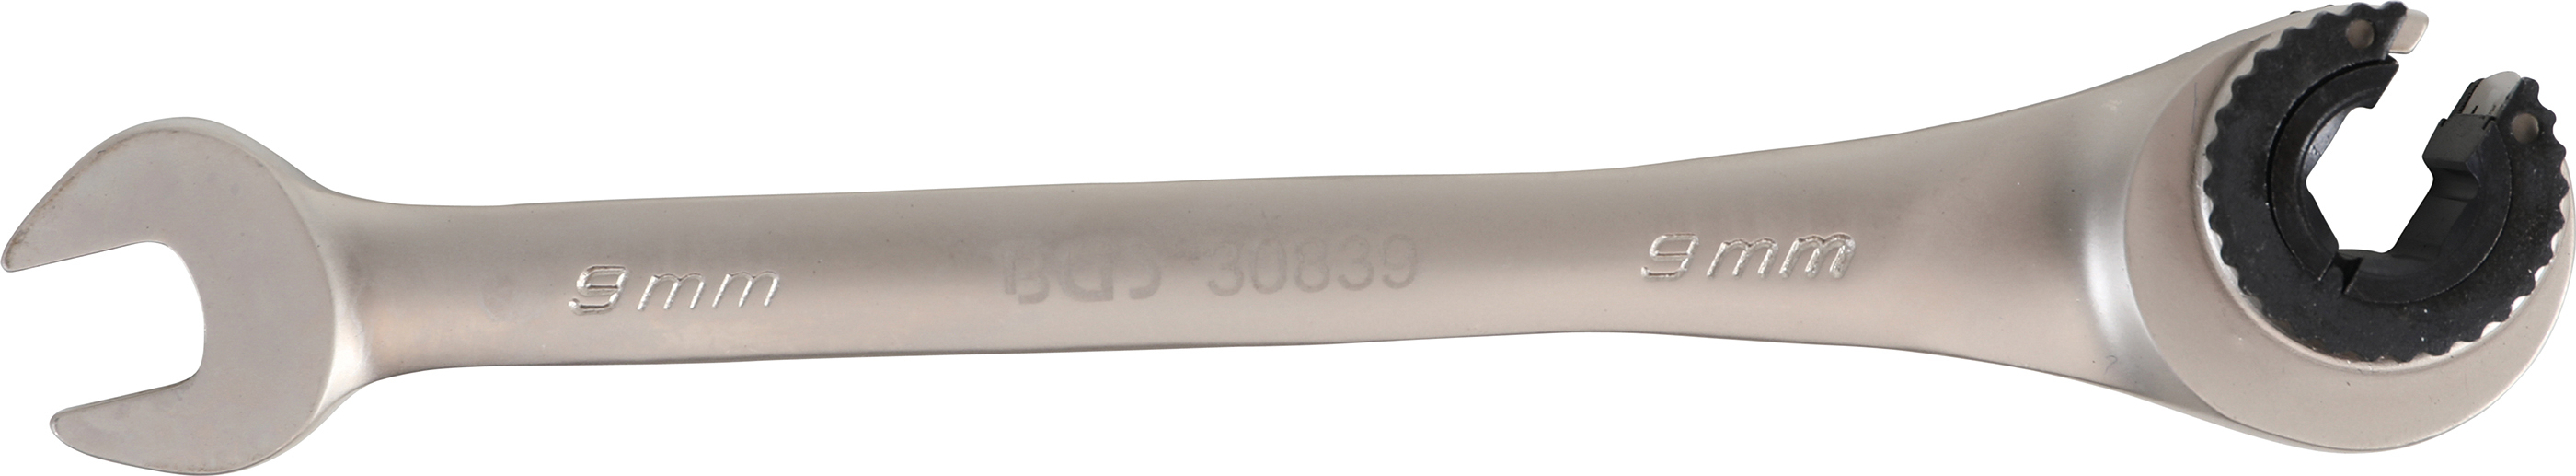 BGS 30839  Cheie inelara cu clichet 9 mm pentru conducte